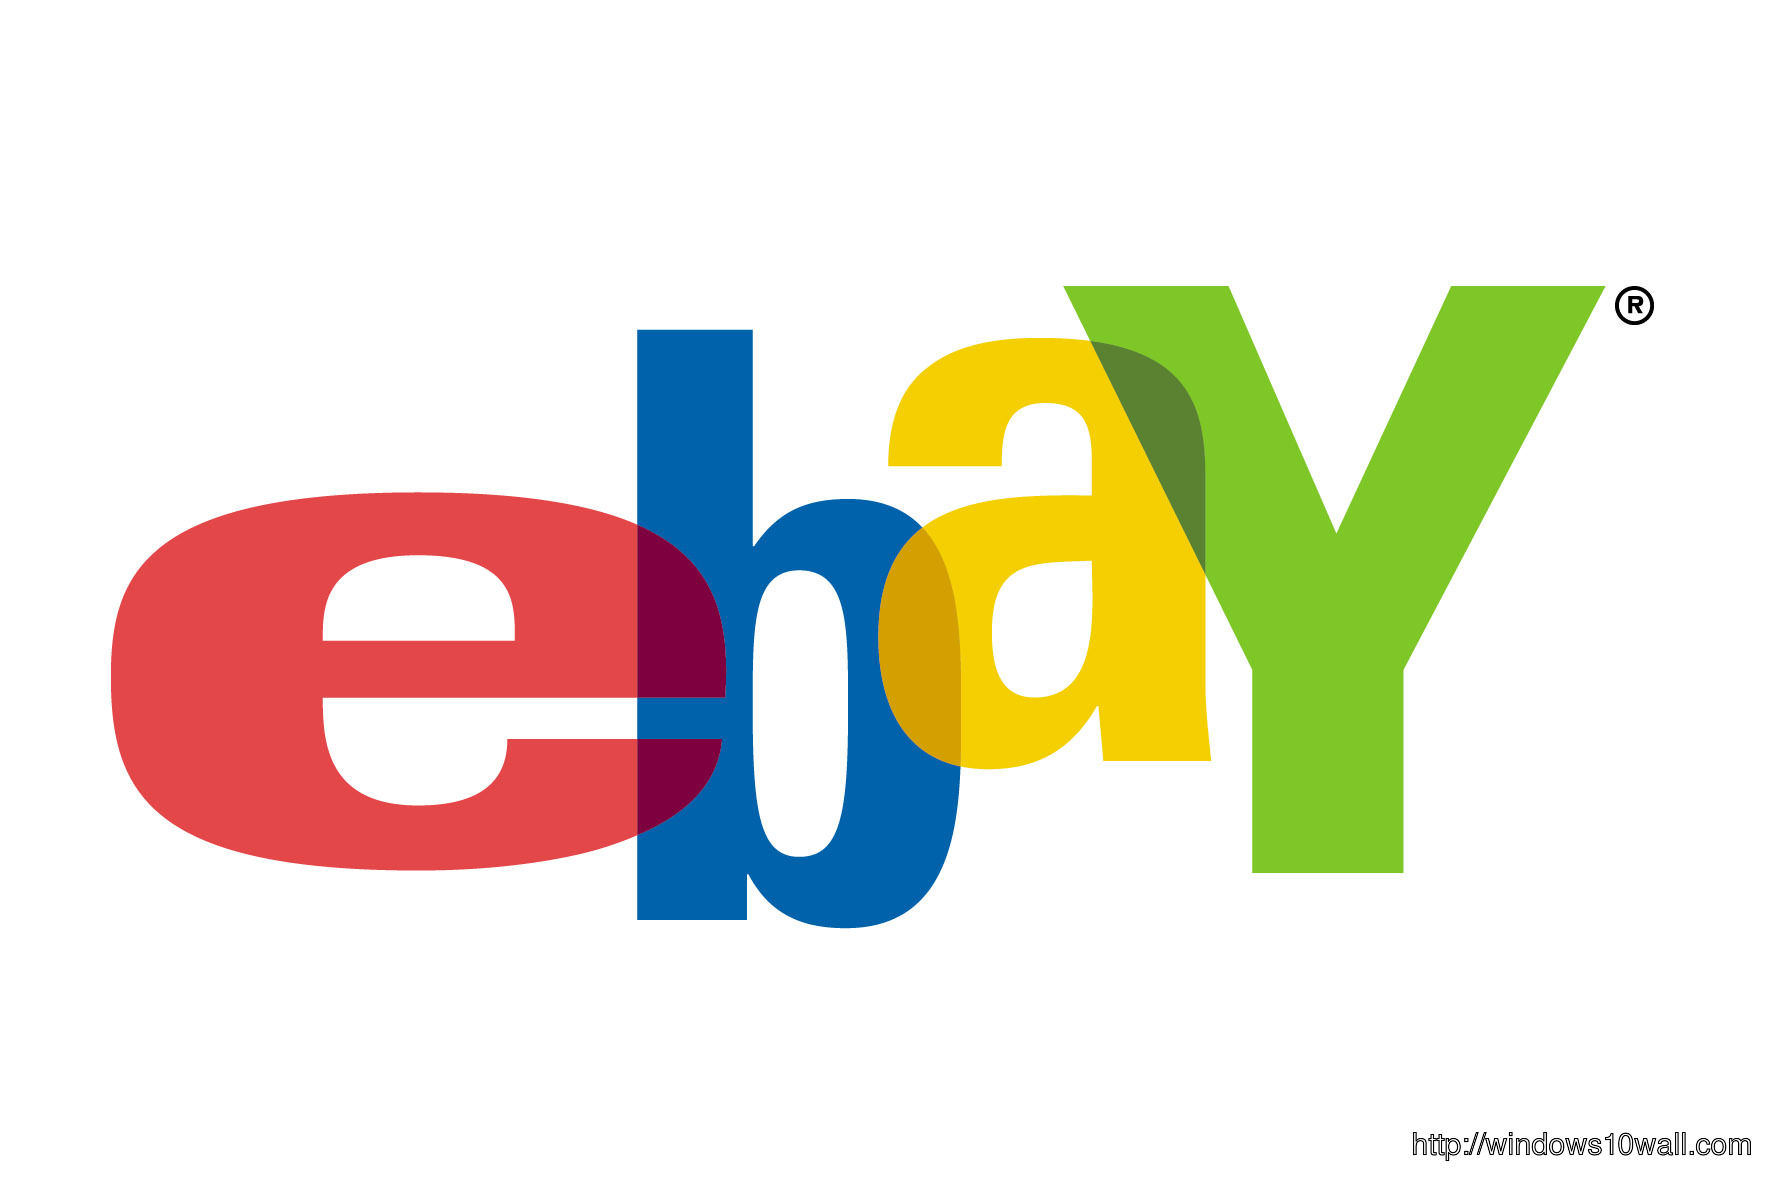 eBay Background Logo